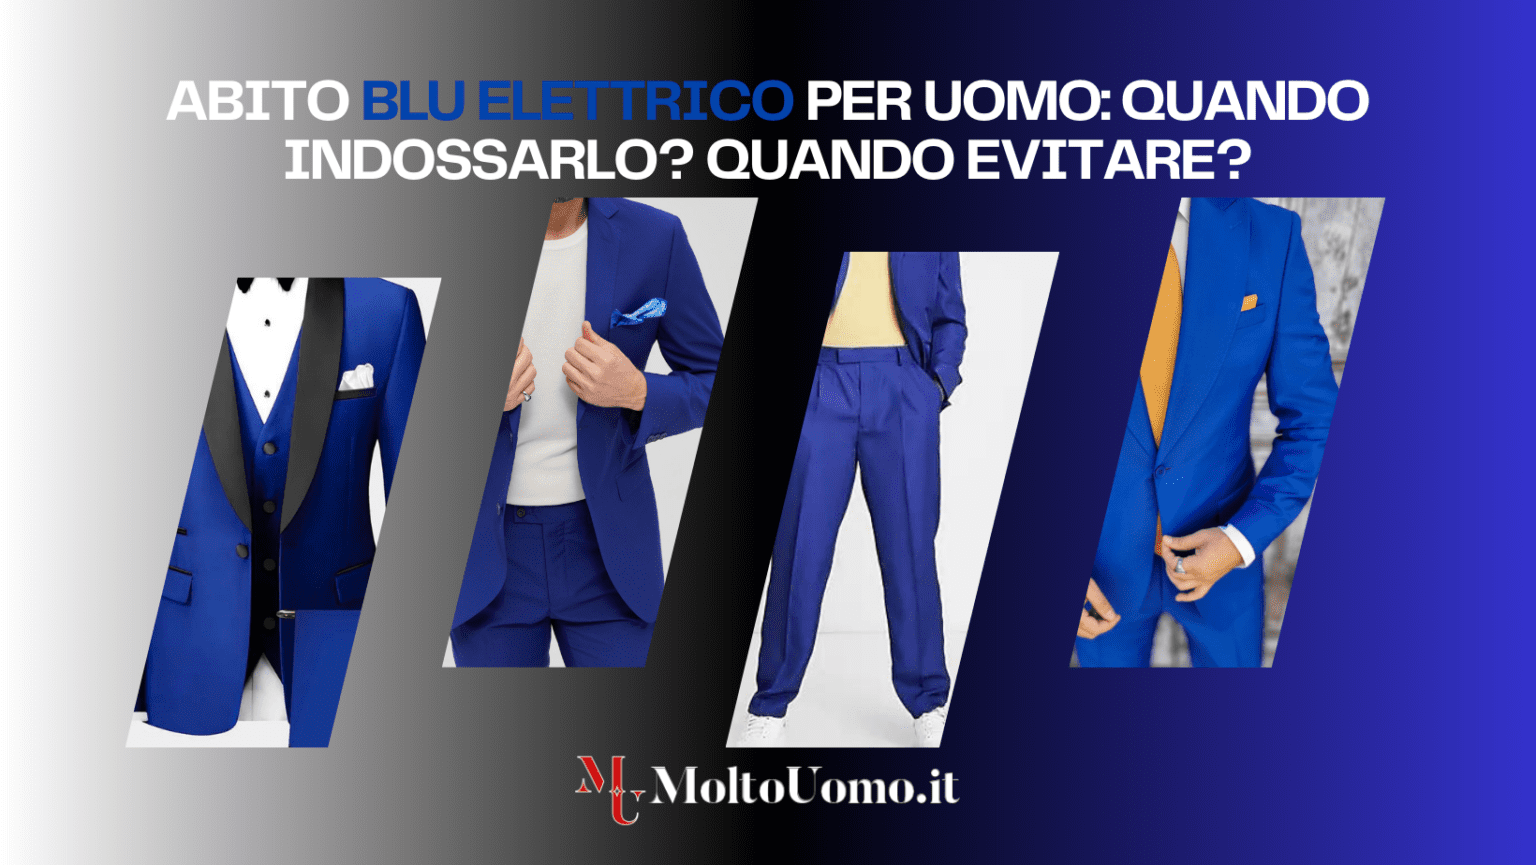 L'abito blu elettrico è uno dei capi più audaci nel guardaroba maschili: perfetto per l'uomo che desidera distinguersi senza rinunciare all'eleganza, questo colore vibrante può essere un'arma a doppio taglio se non indossato con le giuste accortezze